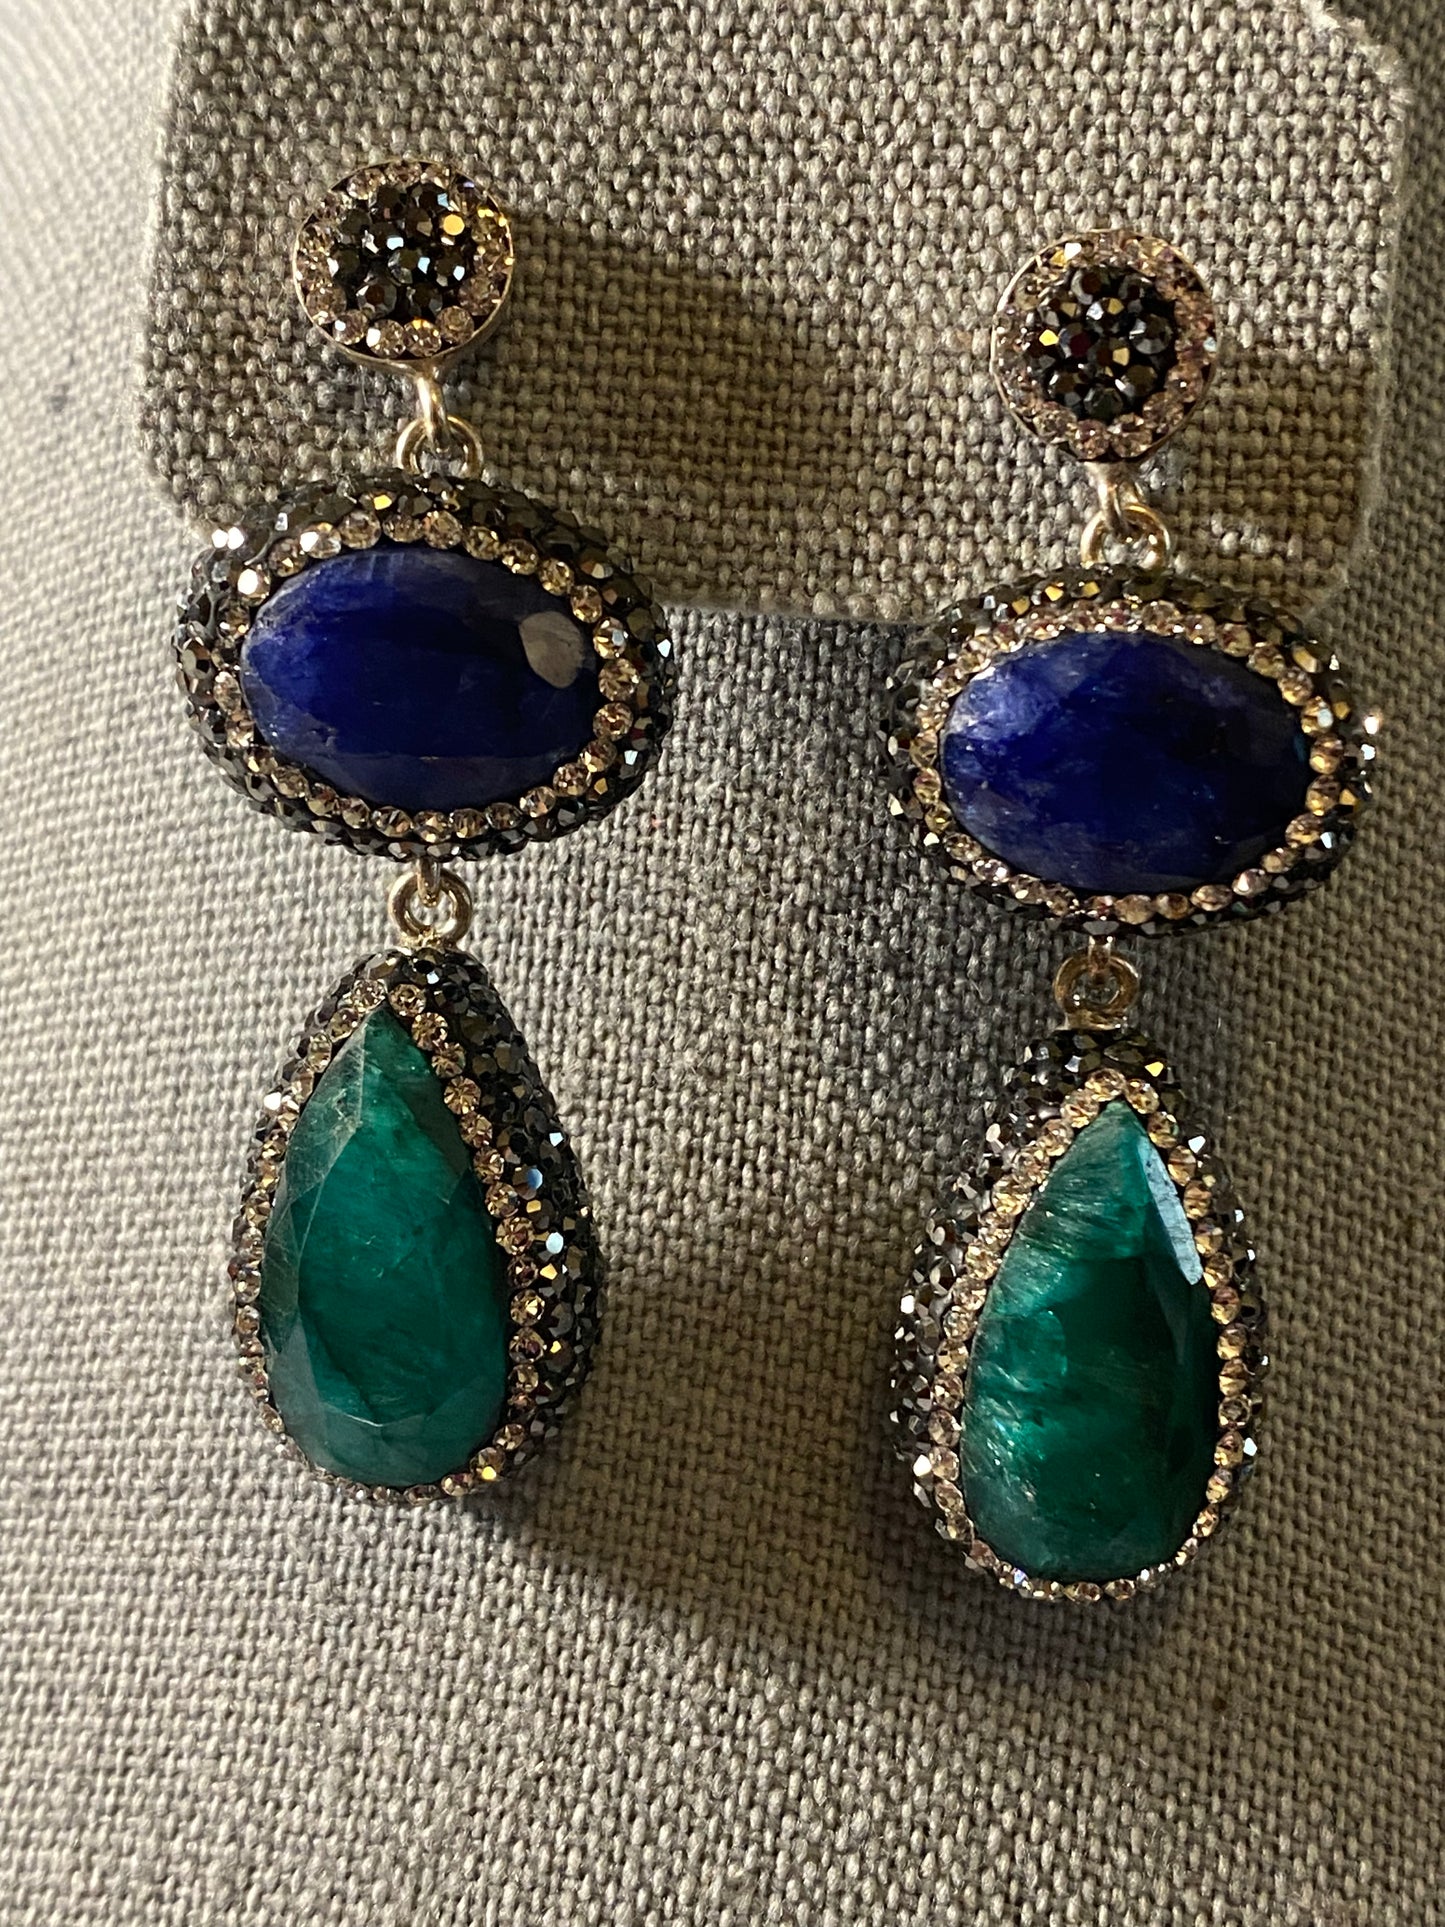 New Jewelry: Blue & Green Crystal Earrings